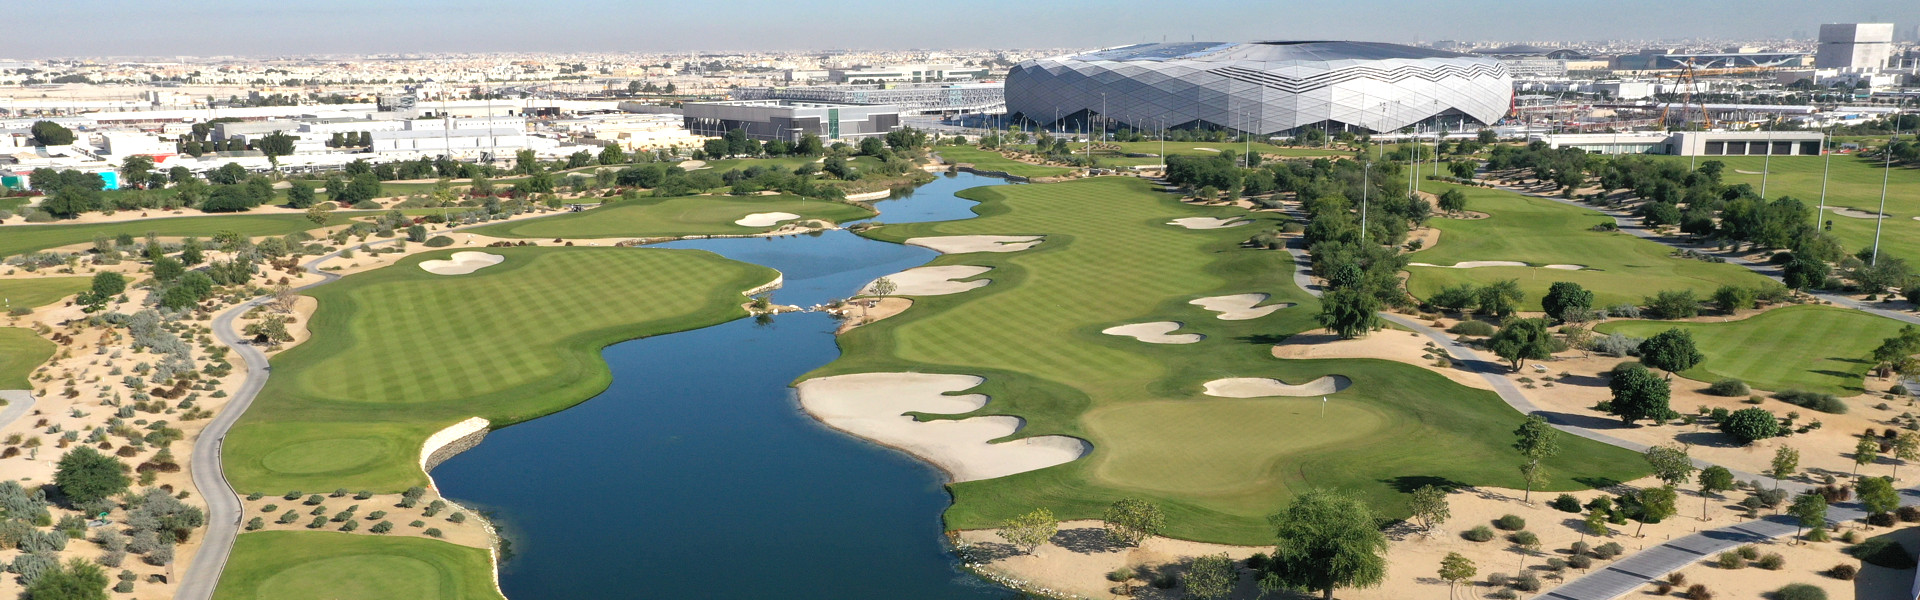 Education City Golf Club, Doha - 18 hole, 9 hole, and 6 hole course